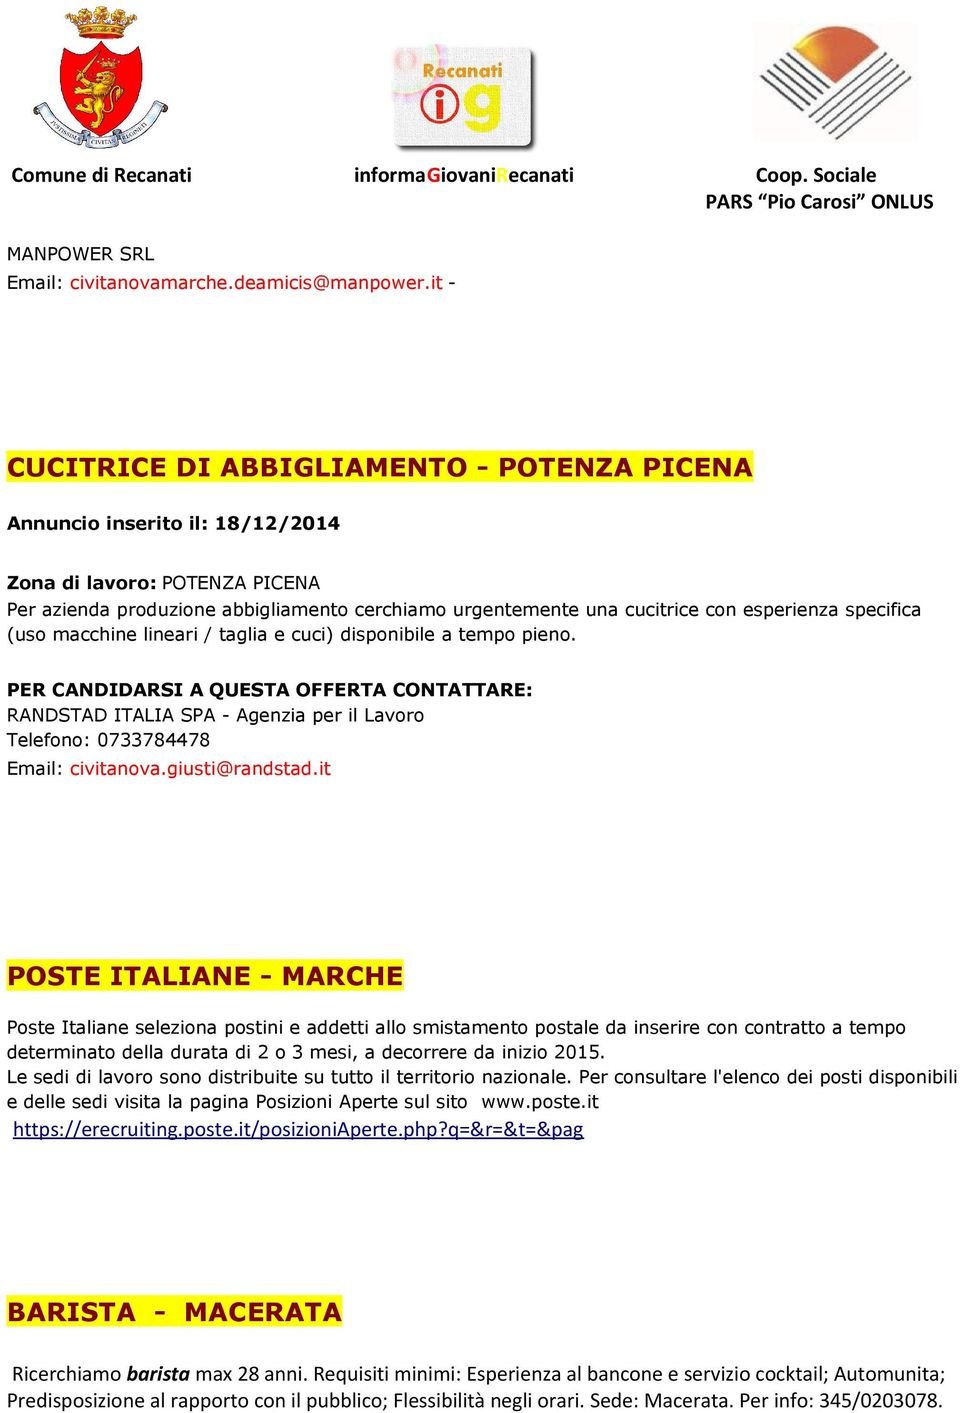 lineari / taglia e cuci) disponibile a tempo pieno. RANDSTAD ITALIA SPA - Agenzia per il Lavoro Telefono: 0733784478 Email: civitanova.giusti@randstad.